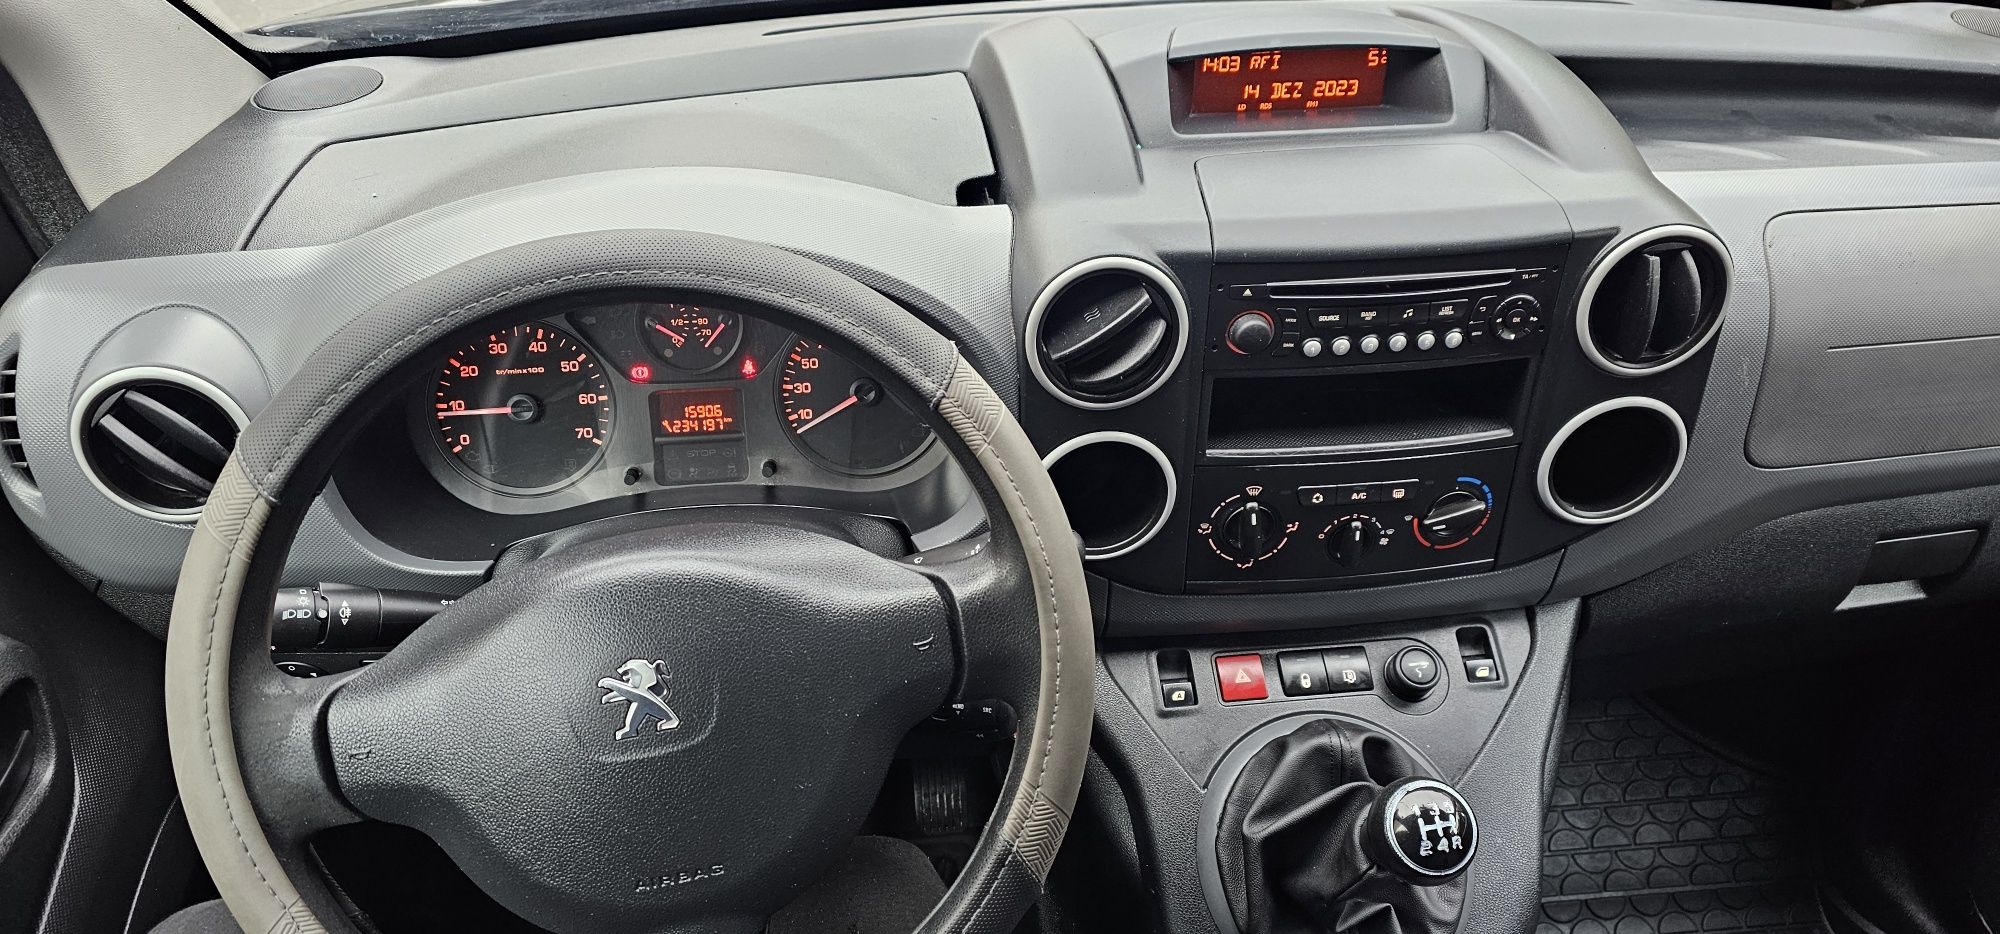 Peugeot Partner 1,6 hdi,115 cp,Model.2014,E5,clima.3 locuri.